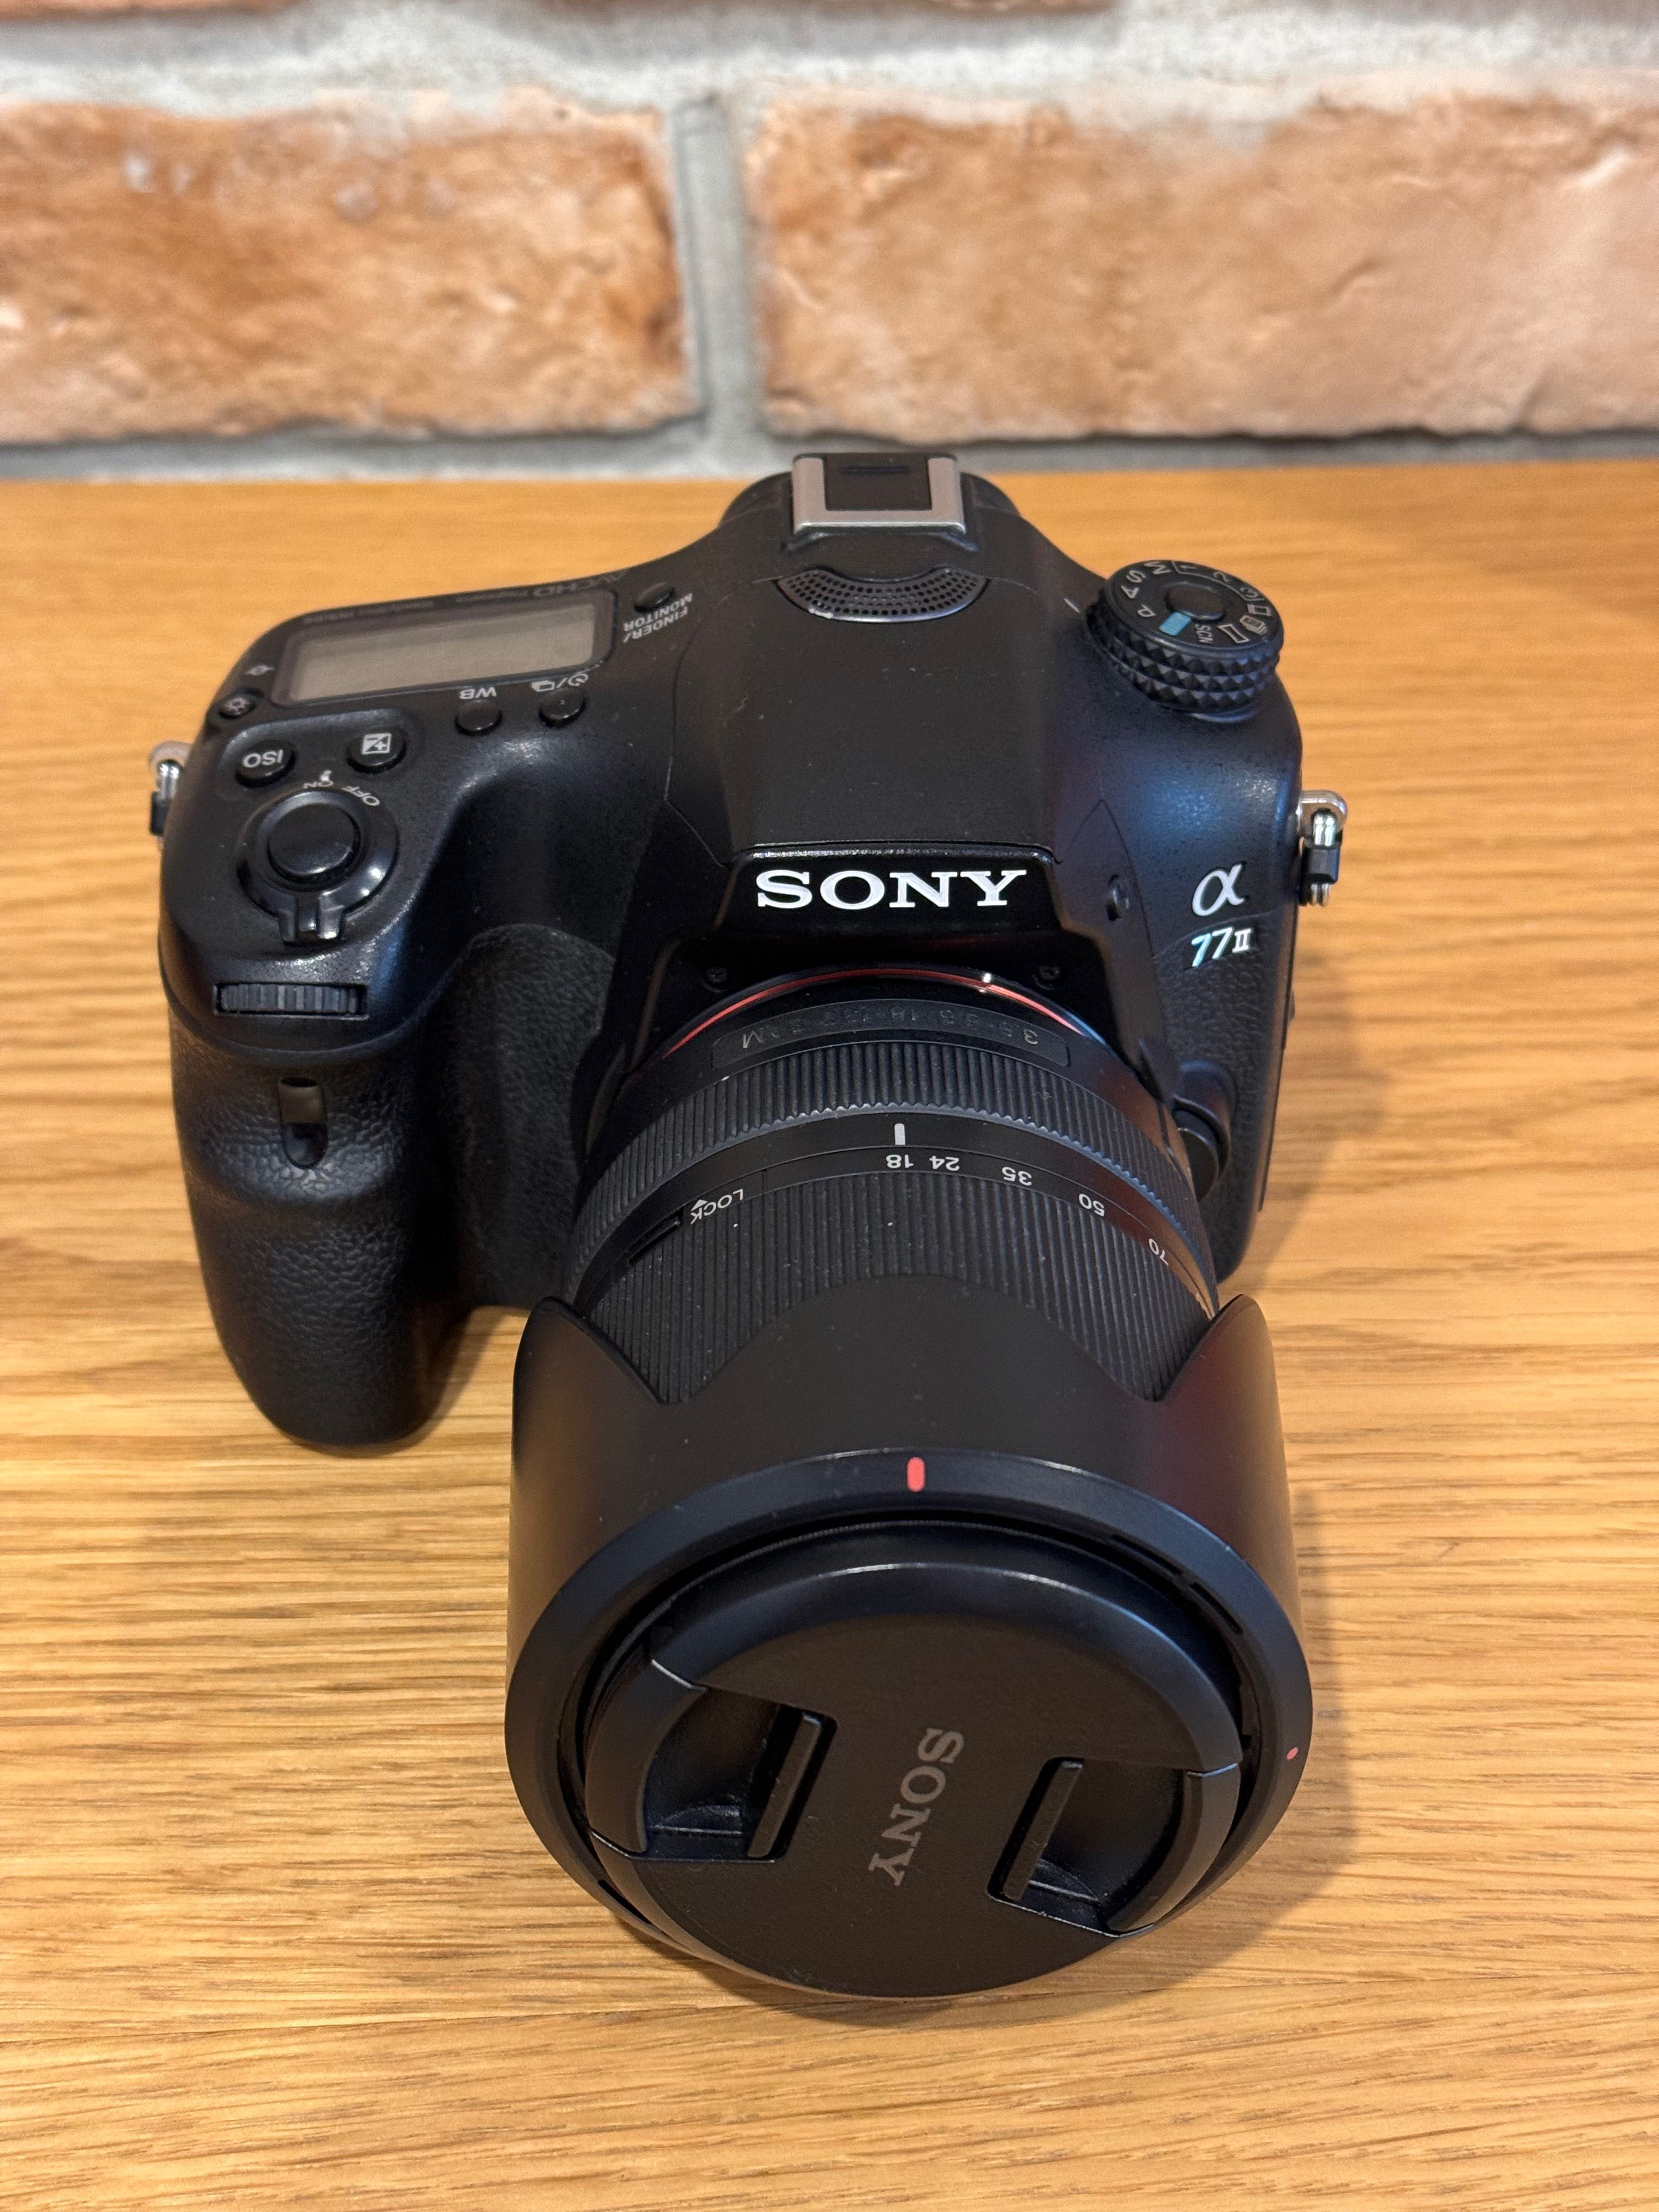 Aparat Sony A77M2 (ILCA-77M2) Zestaw z obiektywami i lampą - jak nowy